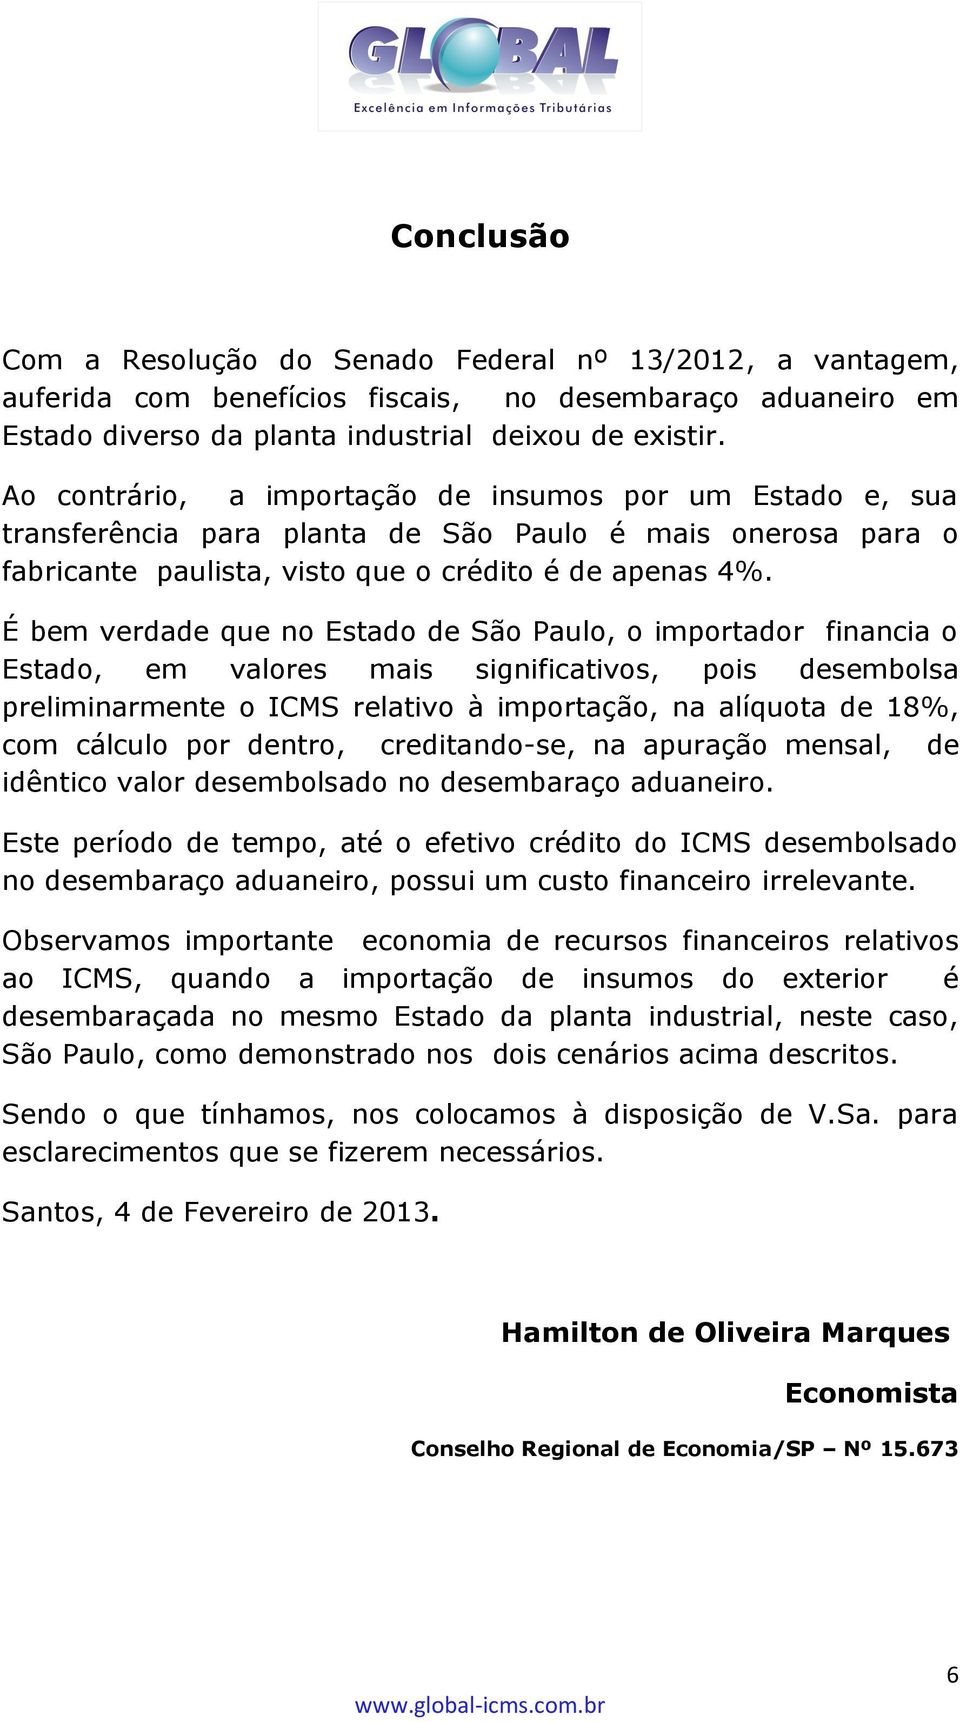 É bem verdade que no Estado de São Paulo, o importador financia o Estado, em valores mais significativos, pois desembolsa preliminarmente o ICMS relativo à importação, na alíquota de 18%, com cálculo